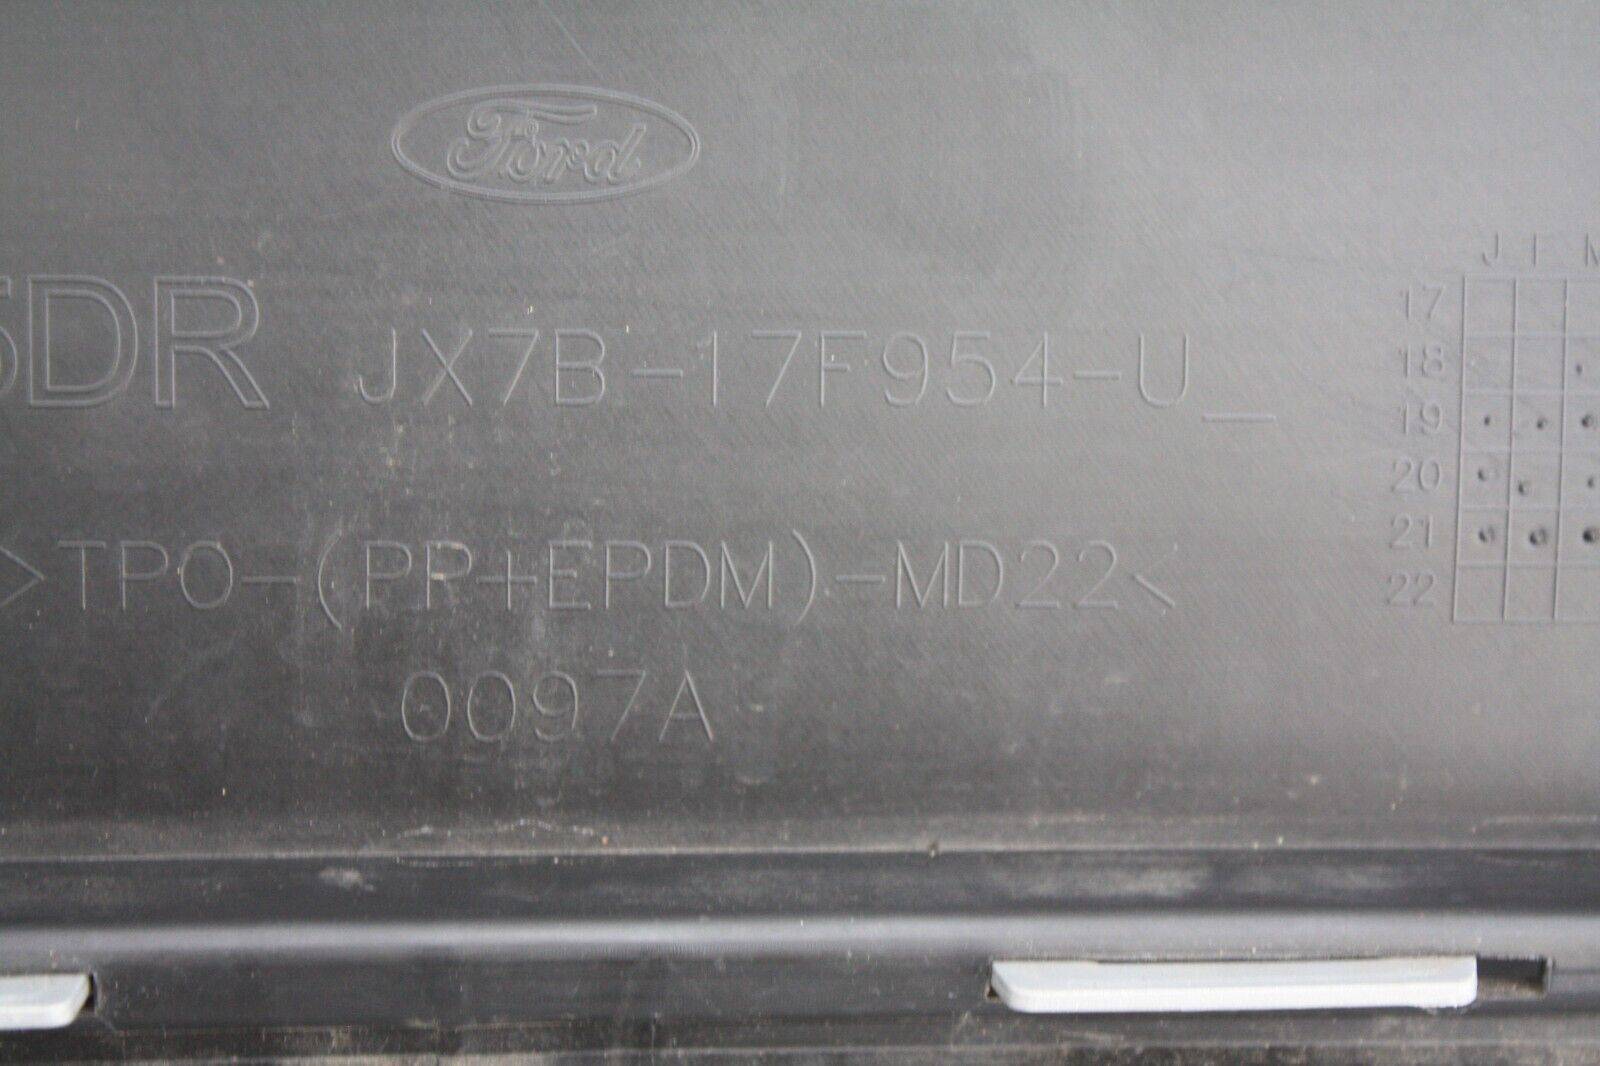 Ford-Focus-Rear-Bumper-Lower-Section-JX7B-17F954-U-Genuine-175842319961-14